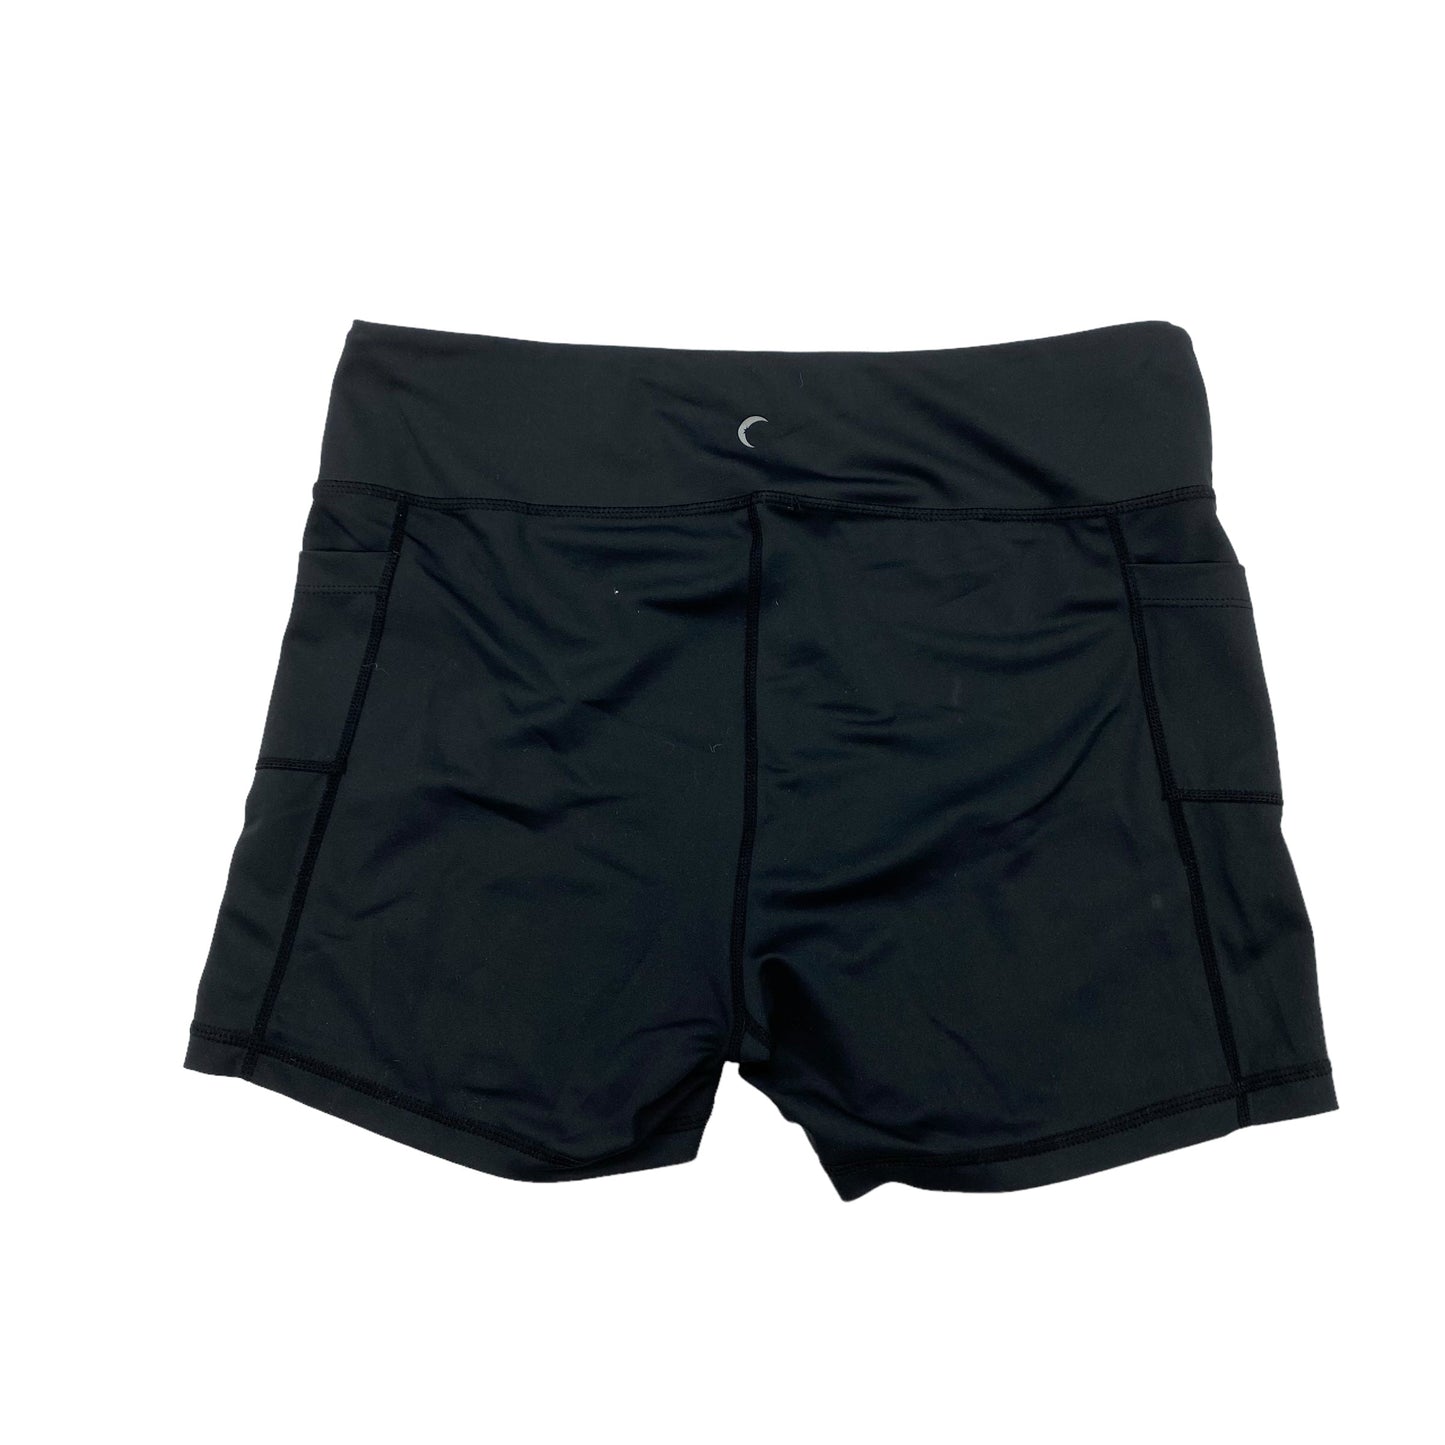 Athletic Shorts By Zyia  Size: Xxxl